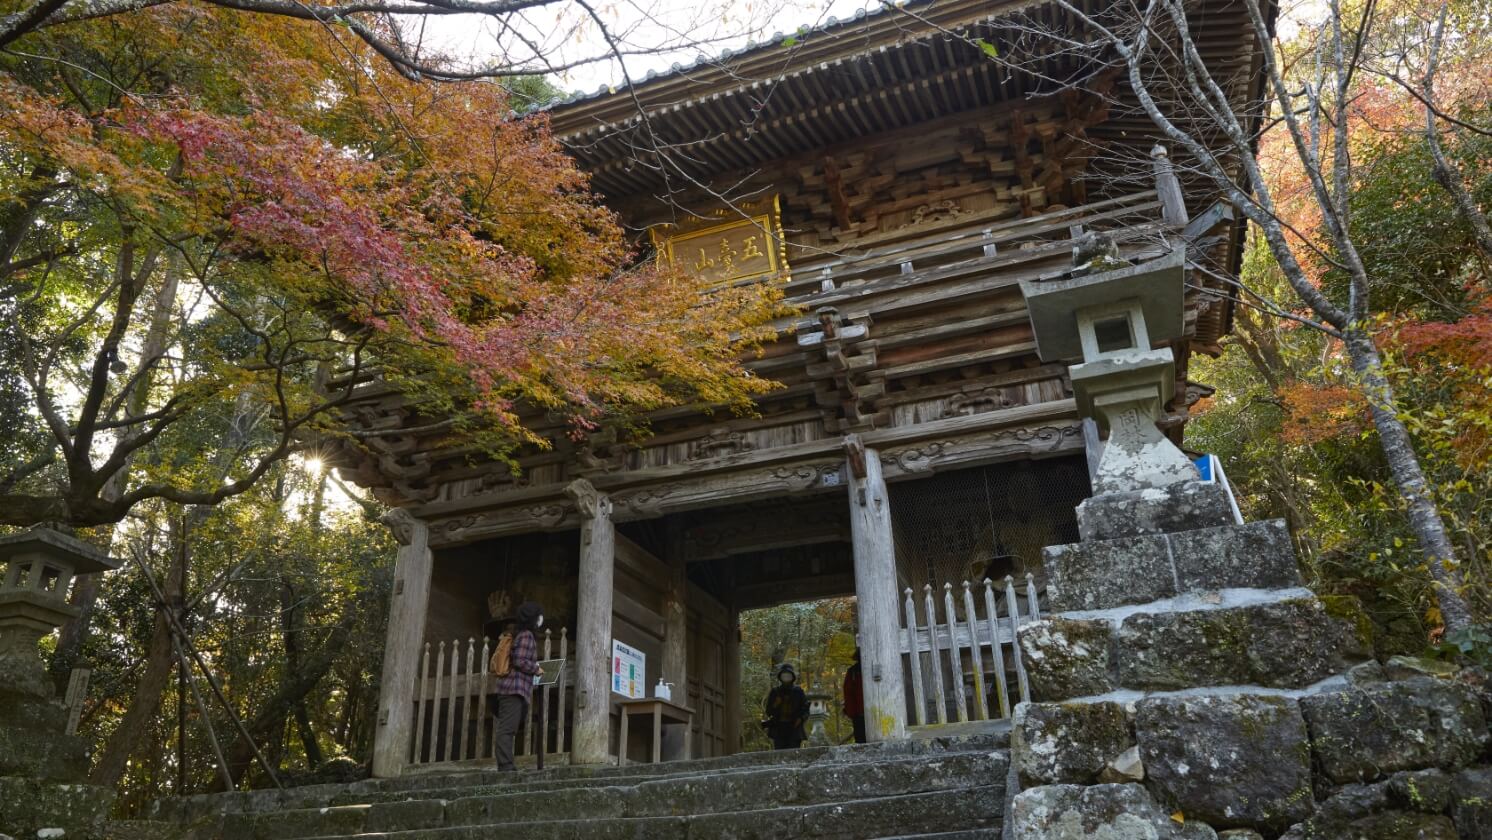 Godaisan Chikurinji Temple